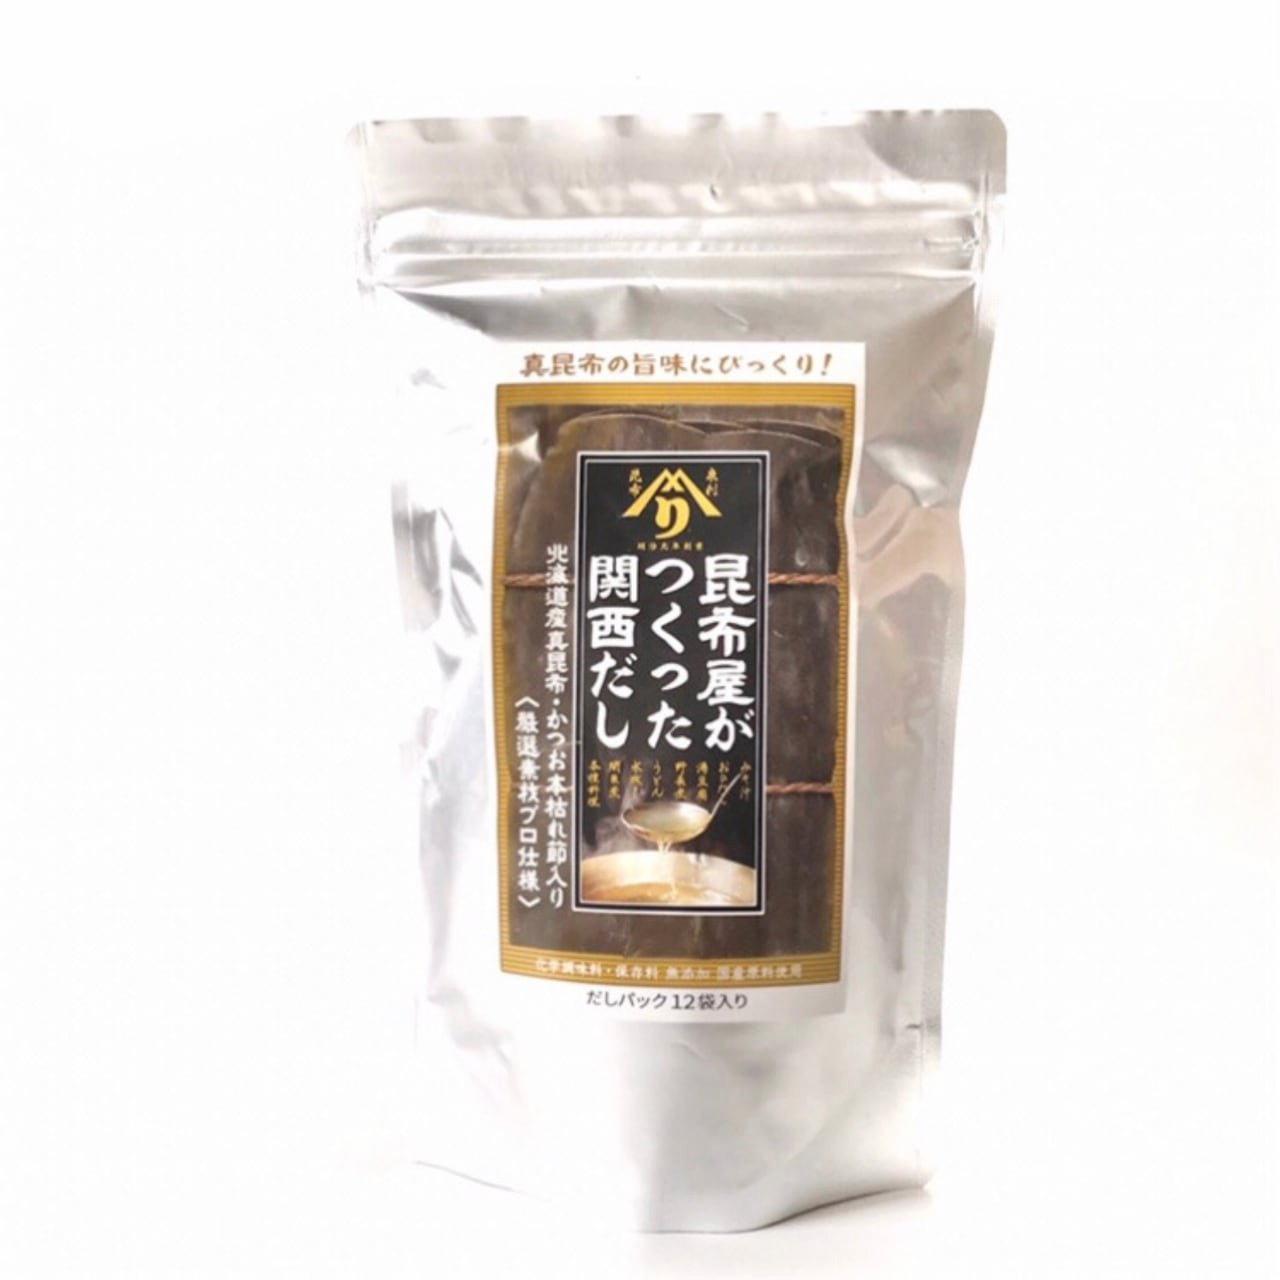 Izuri Additive - Free Kombu Dashi Soup Stock Kansai - Style 8g x 12 Packets